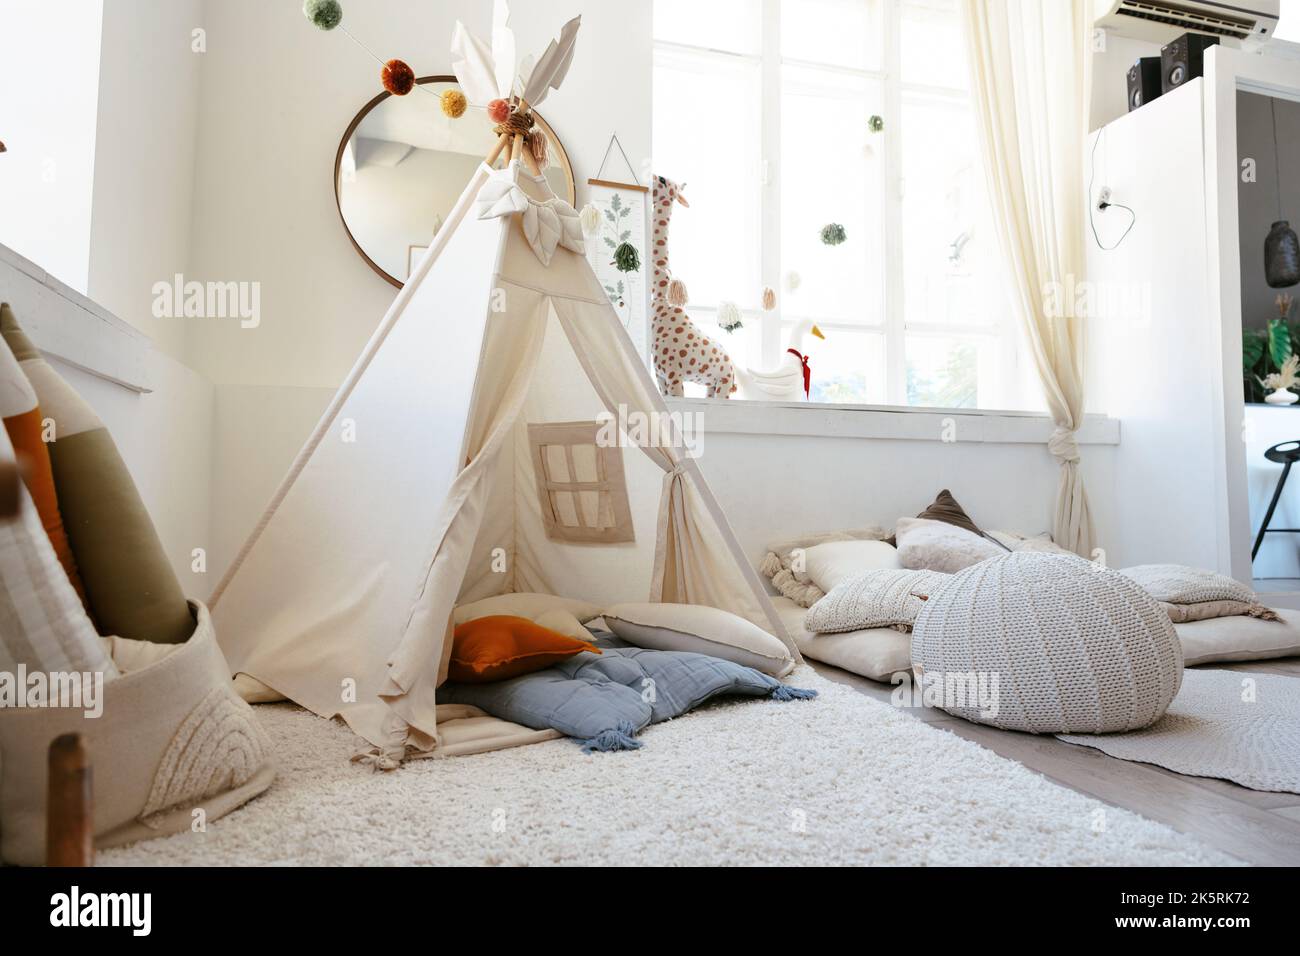 Elegante interno della camera per bambini con capanna Foto stock